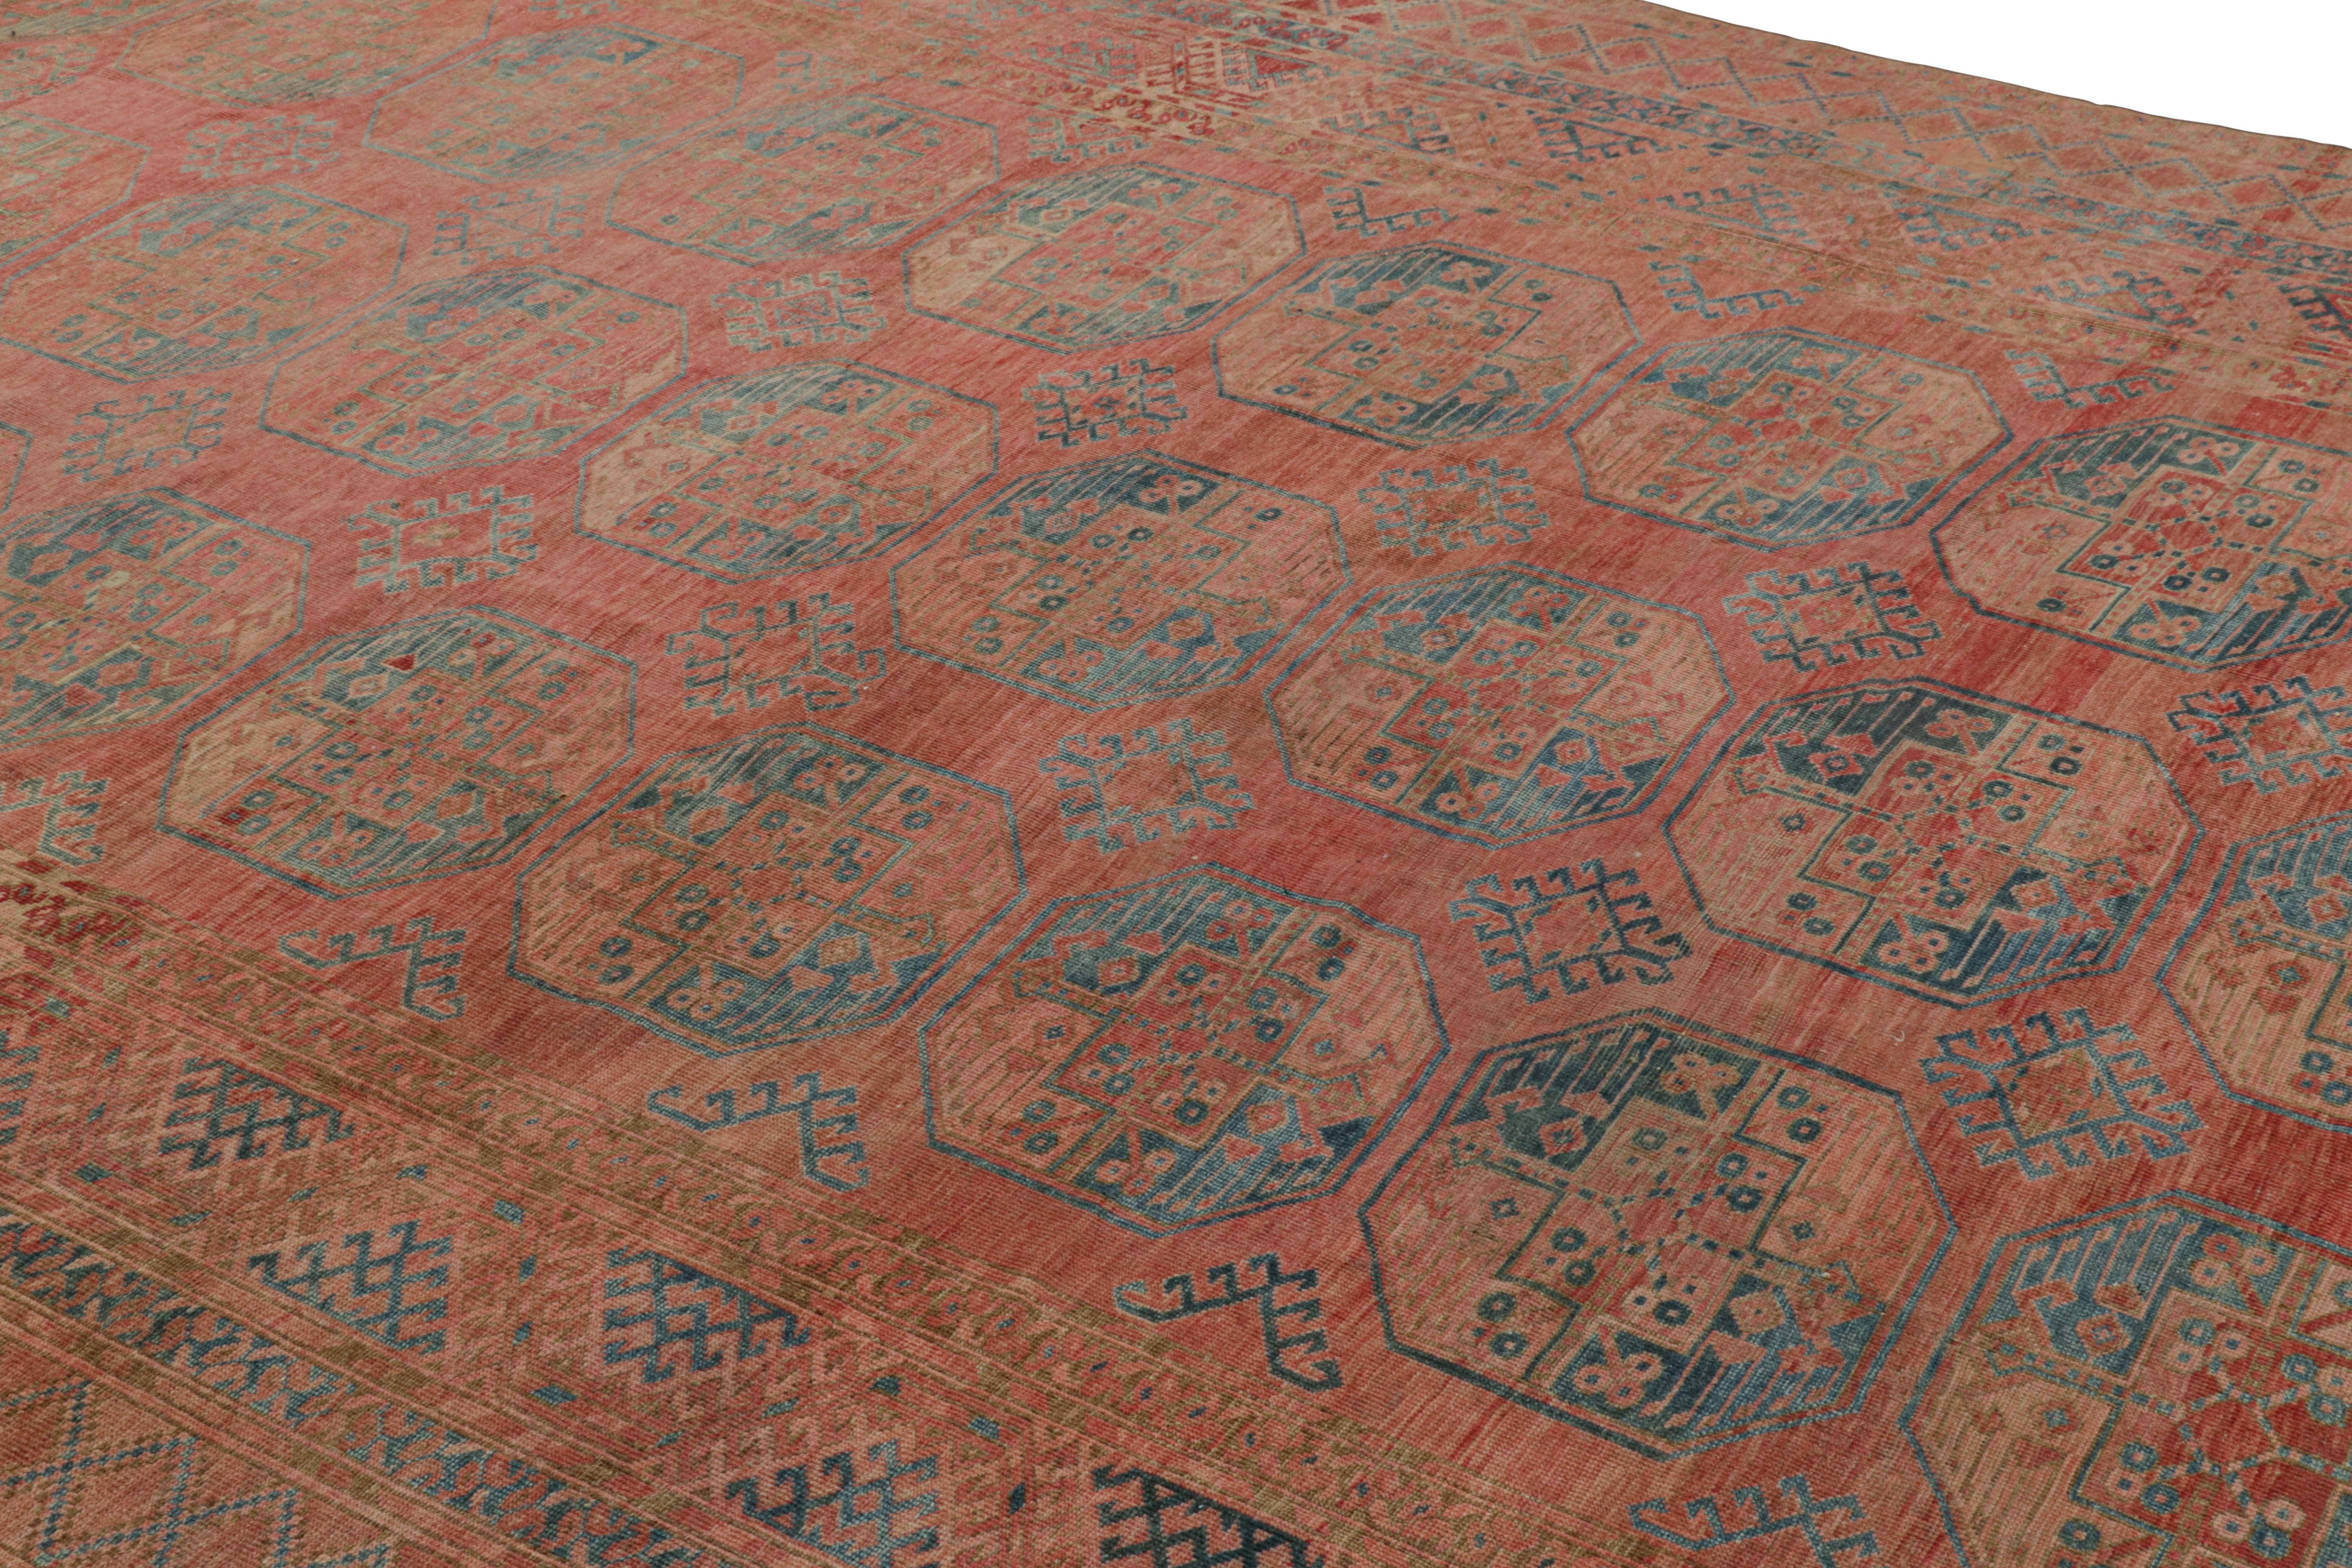 Dieser 9x15 große Teppich aus handgeknüpfter Wolle stammt aus der Türkei (ca. 1950-1960) und ist von den Ersari, einem Unterstamm der Turkmenen, der oft für seine ausgeprägten Stammesmuster bekannt ist. 

Über das Design: 

Kenner werden dieses